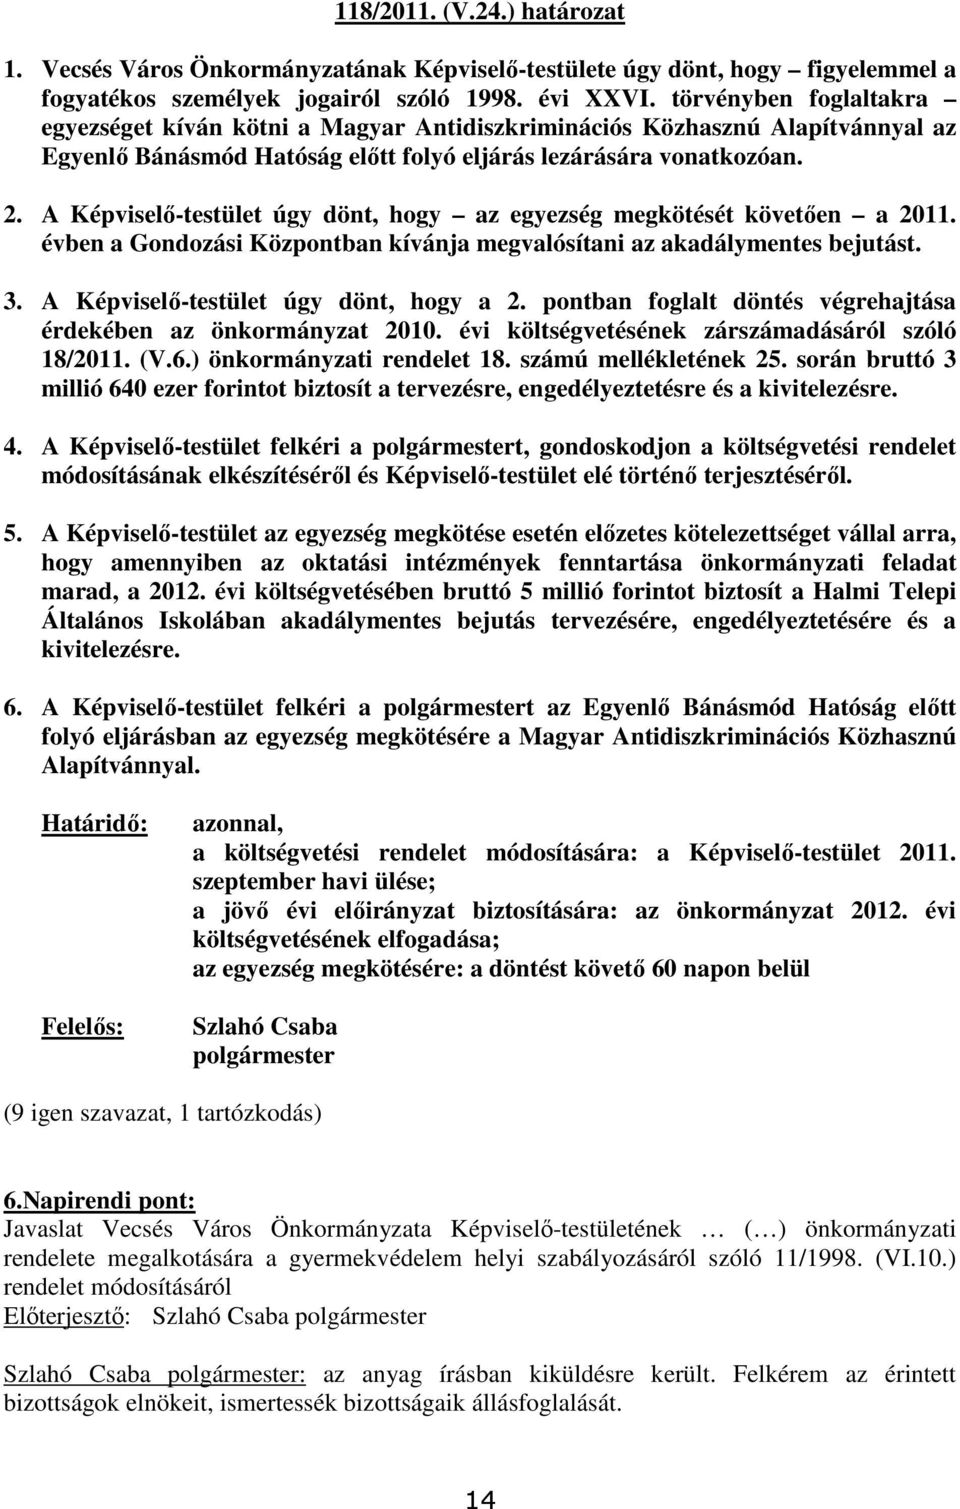 A Képviselı-testület úgy dönt, hogy az egyezség megkötését követıen a 2011. évben a Gondozási Központban kívánja megvalósítani az akadálymentes bejutást. 3. A Képviselı-testület úgy dönt, hogy a 2.